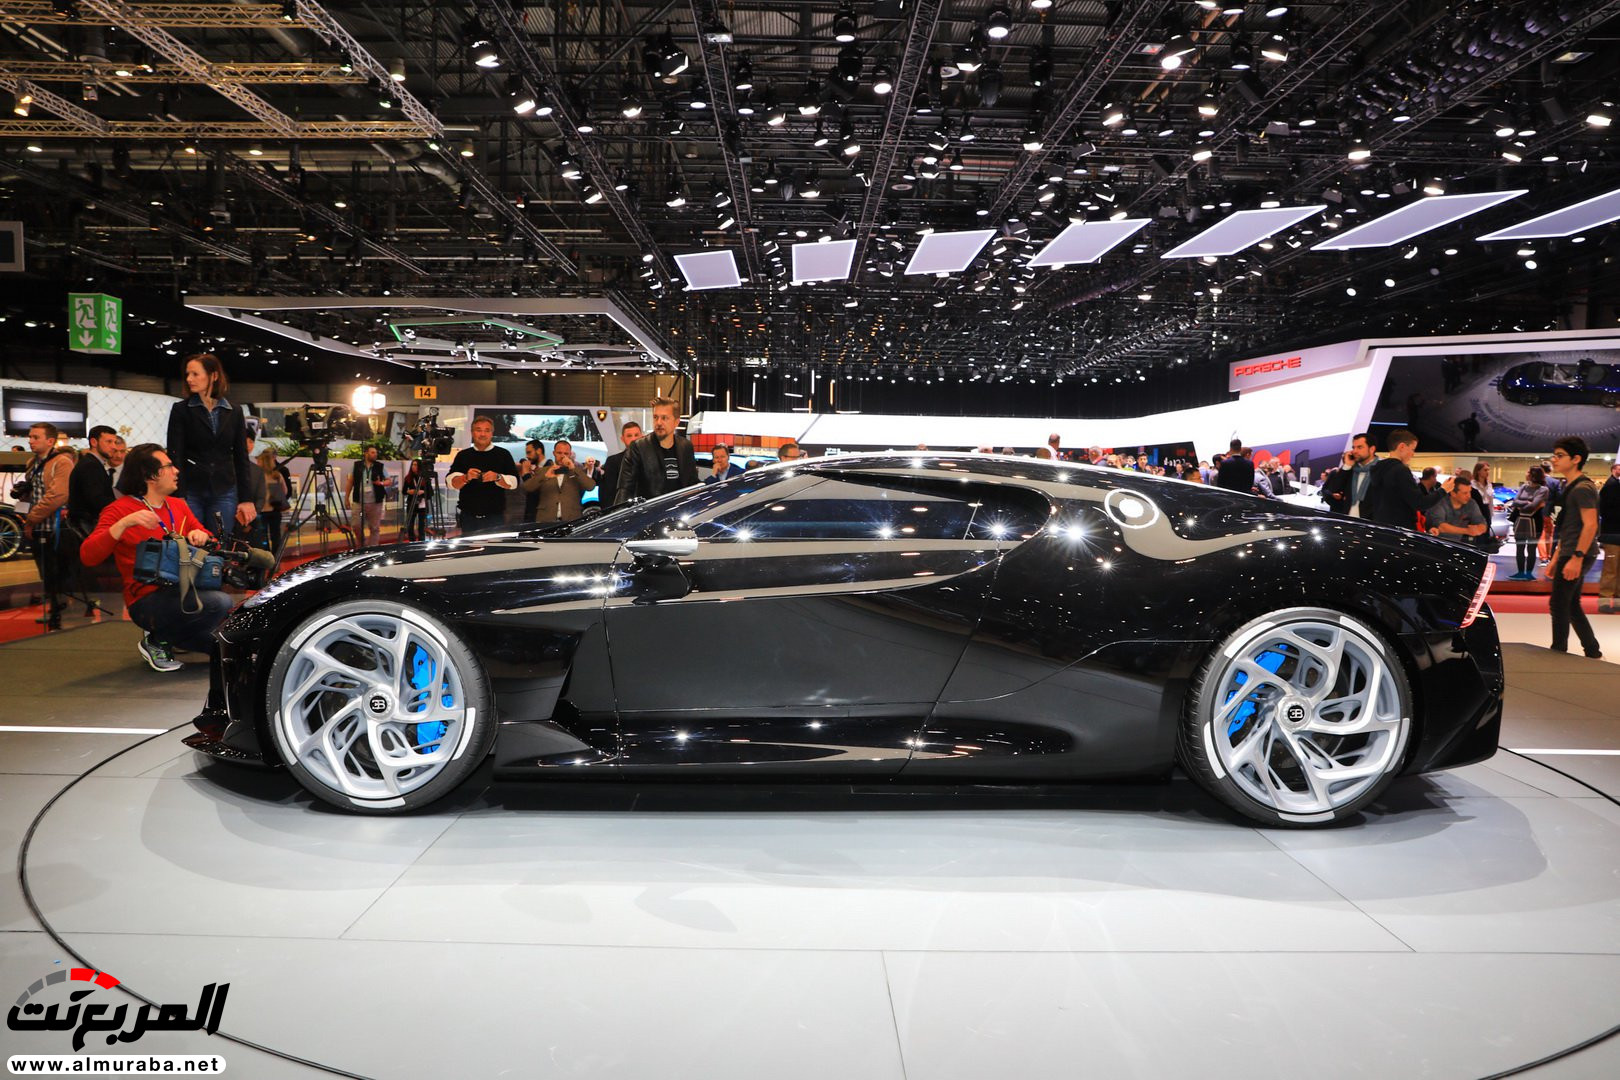 كريستيانو رونالدو قد يكون مالك بوجاتي لافواتيور نوار اغلى سيارة في العالم! 32